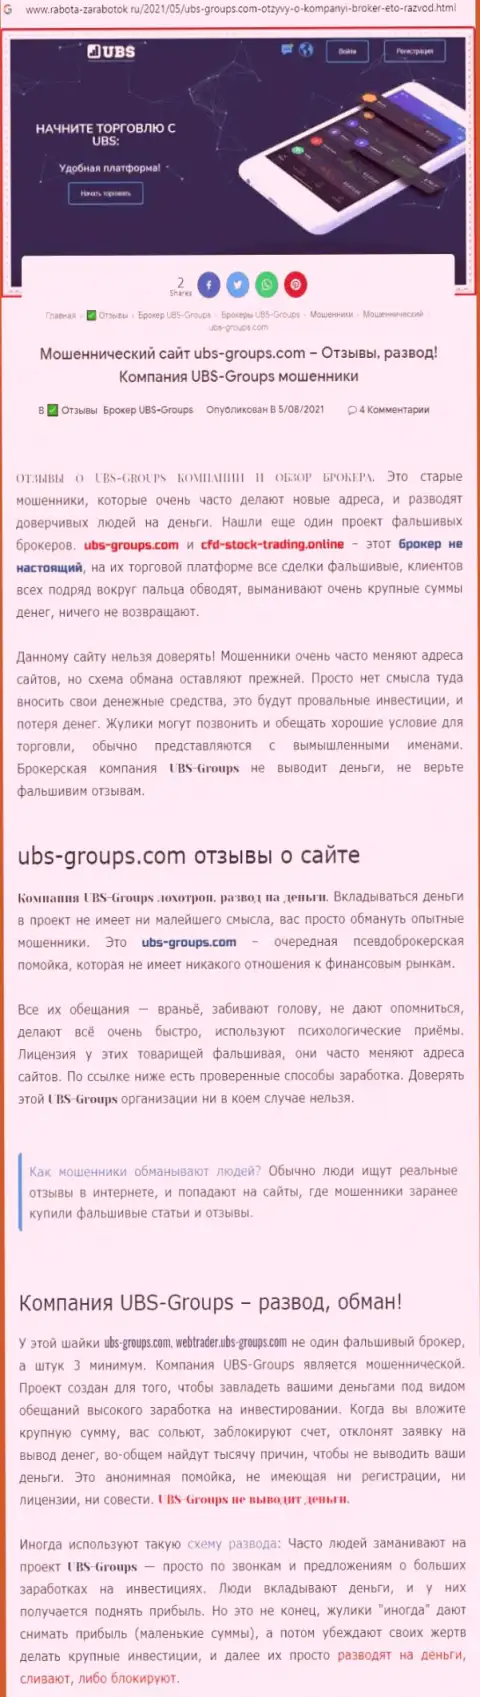 Автор рассуждения утверждает, что UBS-Groups - это МОШЕННИКИ !